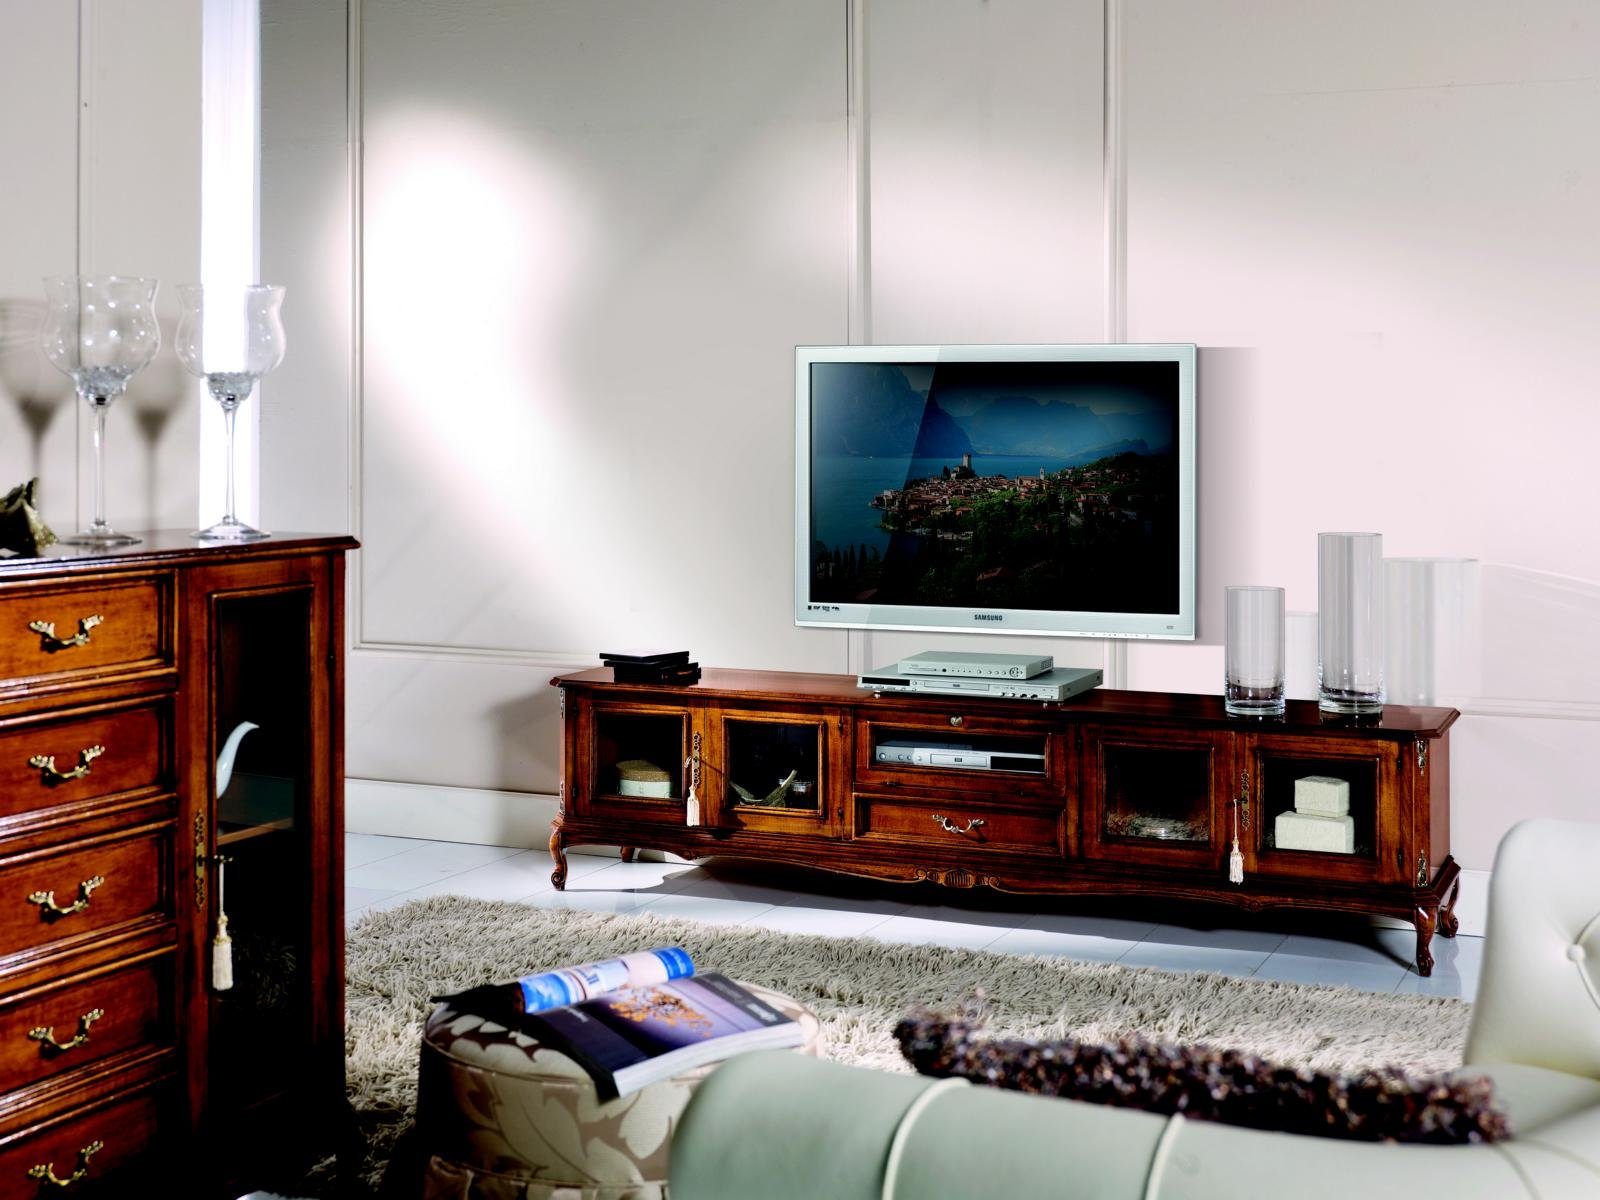 Holz Barock JVmoebel tv Schrank Stil rtv Wohnzimmer Luxus TV-Schrank Sideboard Italienische Möbel